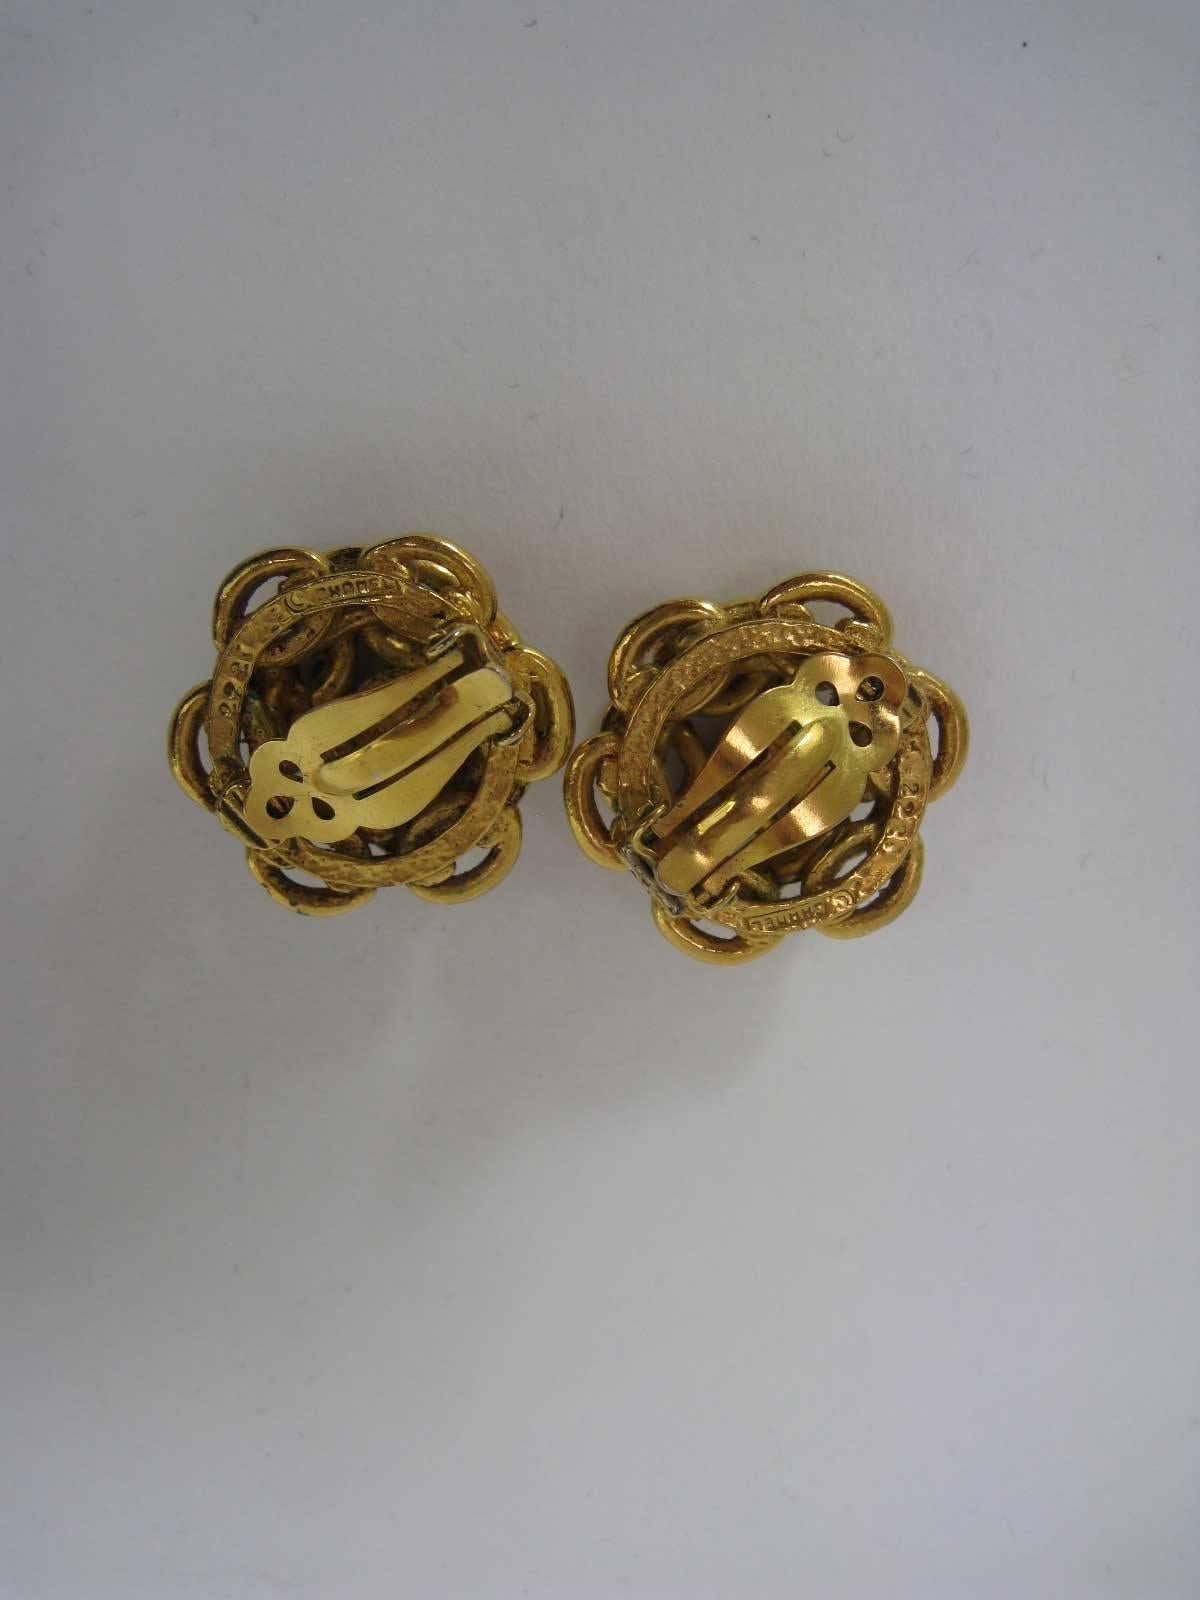 chanel chain earrings